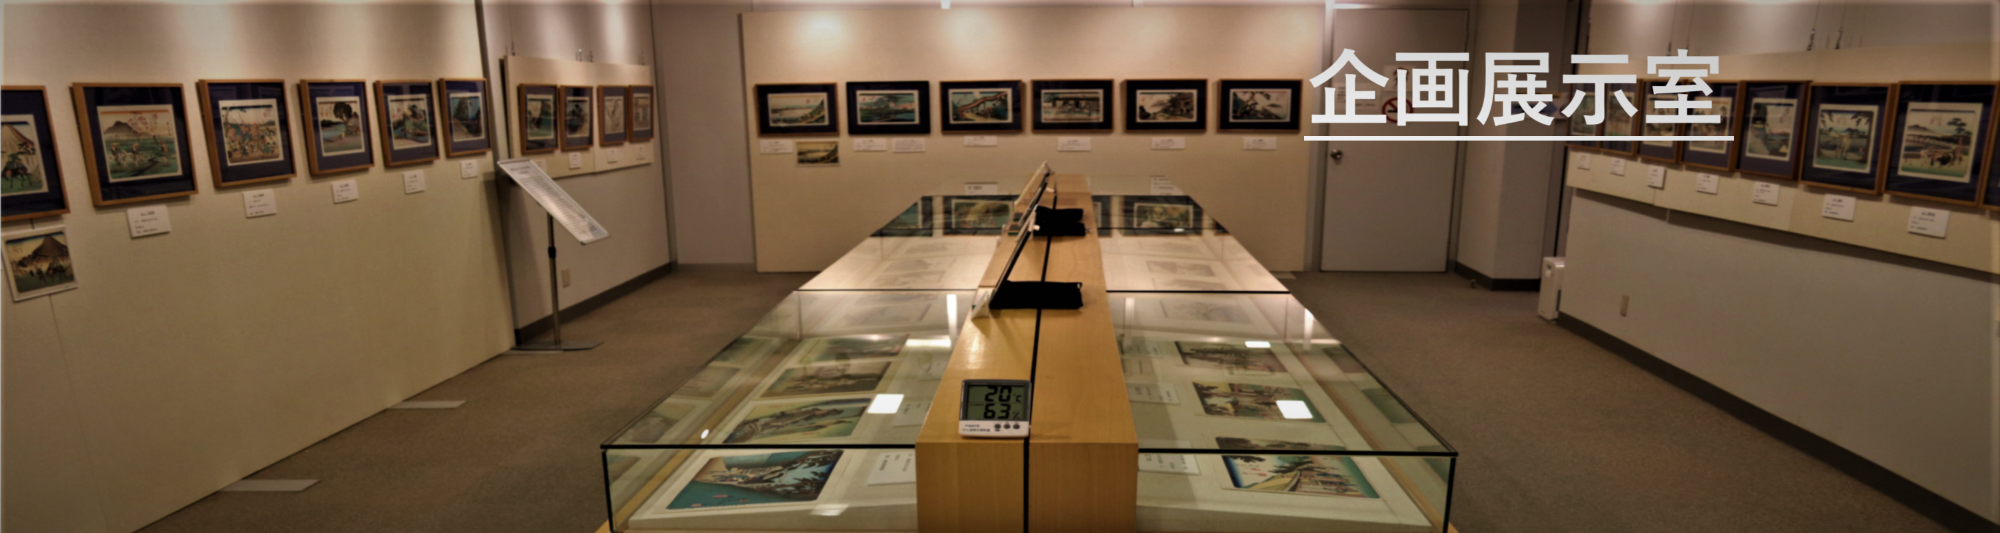 中山道歴史資料館 企画展示室